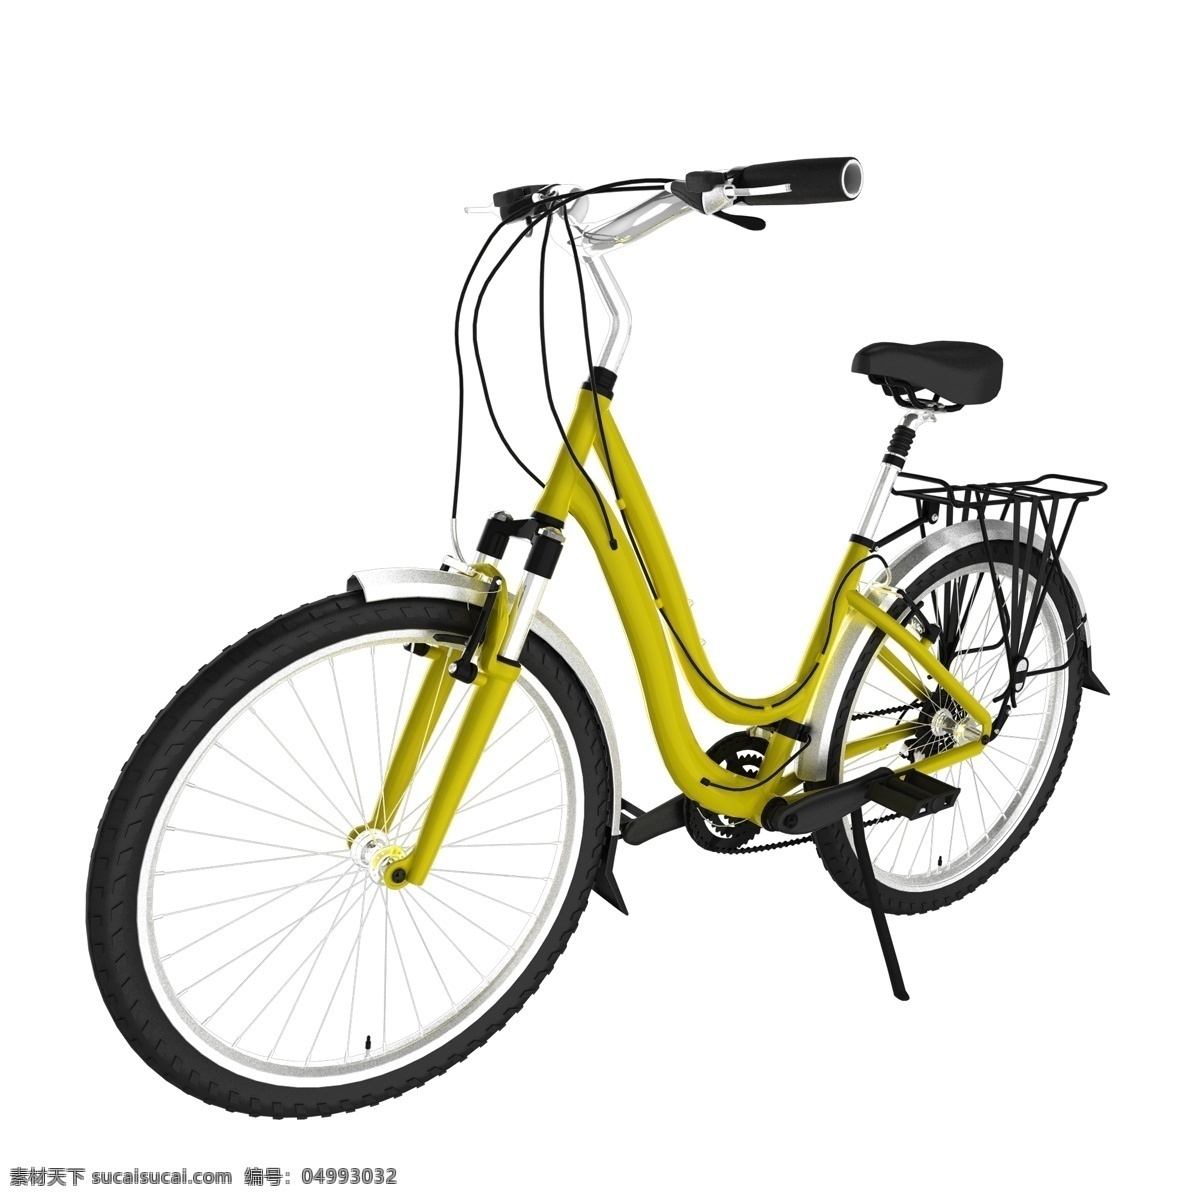 立体 脚踏车 单车 山地车 立体脚踏车 立体单车 黄色单车 黄色脚踏车 交通工具 立体交通工具 黄色